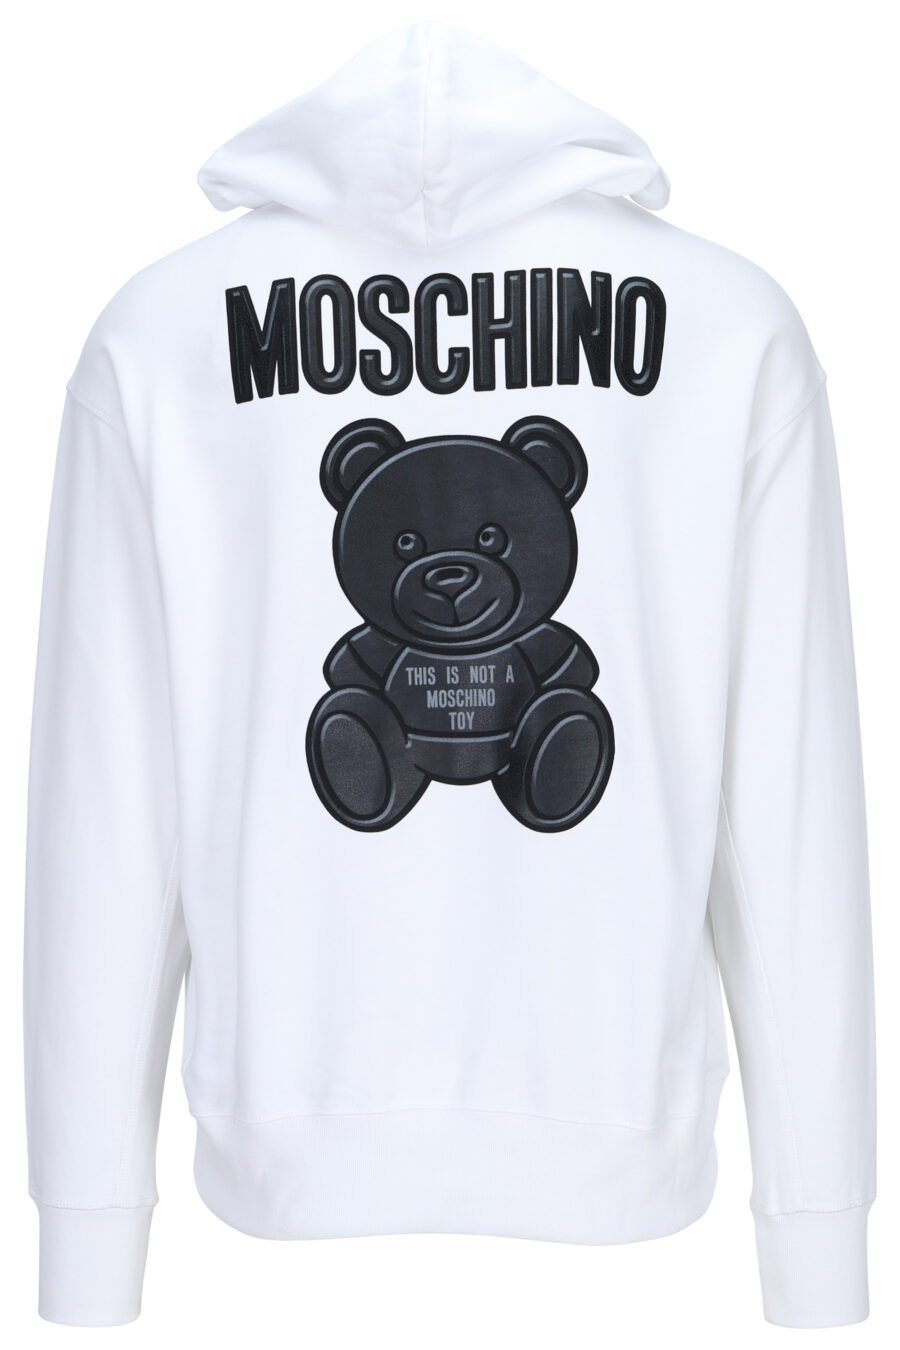 Weißes Öko-Reißverschluss-Sweatshirt mit Kapuze und schwarzem "Teddy"-Maxilogo auf dem Rücken - 889316854763 1